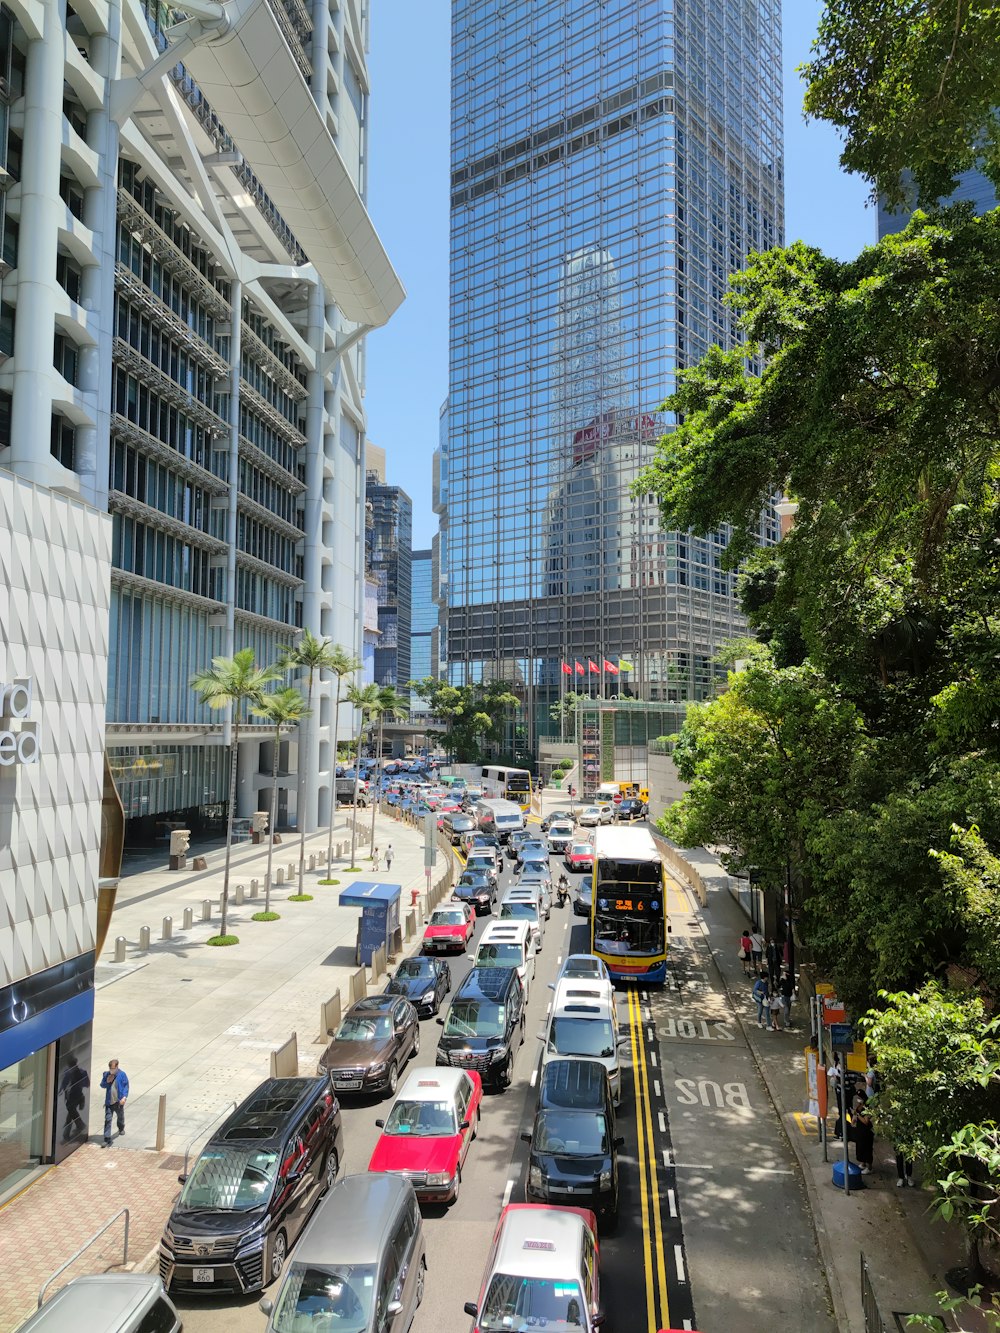 Una calle de la ciudad llena de mucho tráfico junto a edificios altos